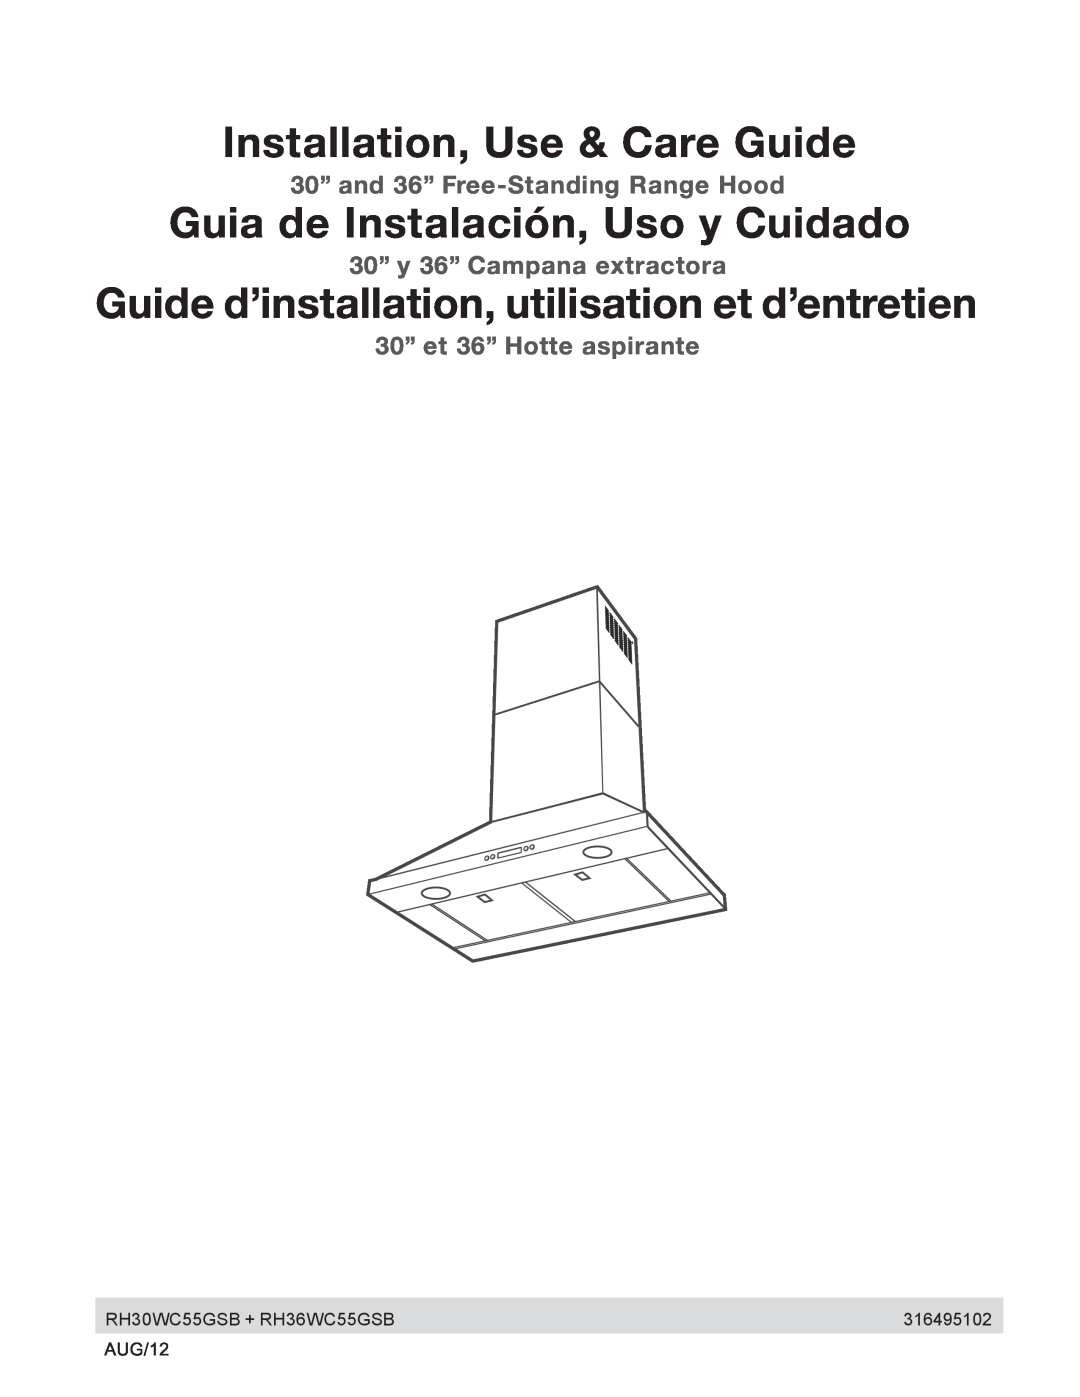 Electrolux RH30WC55GSB manual Installation, Use & Care Guide, Guia de Instalación, Uso y Cuidado 